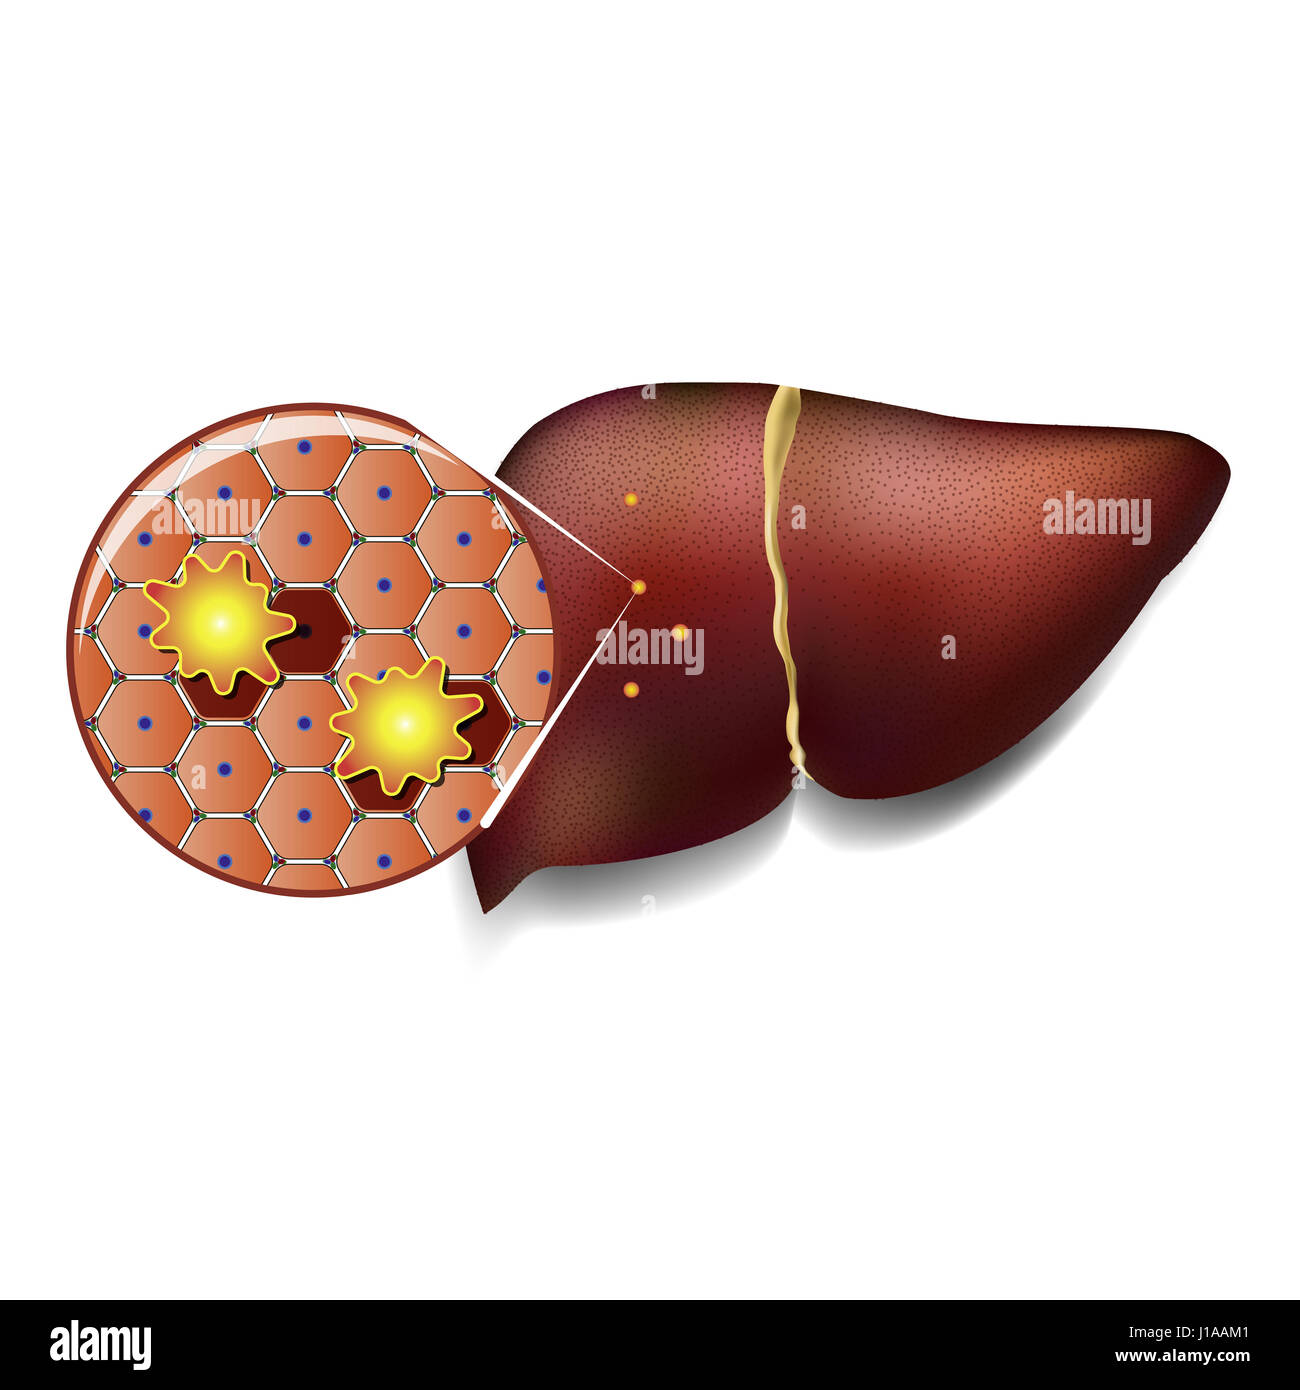 Illustrazione medica di cellule sane del fegato attaccato da tossine Foto Stock